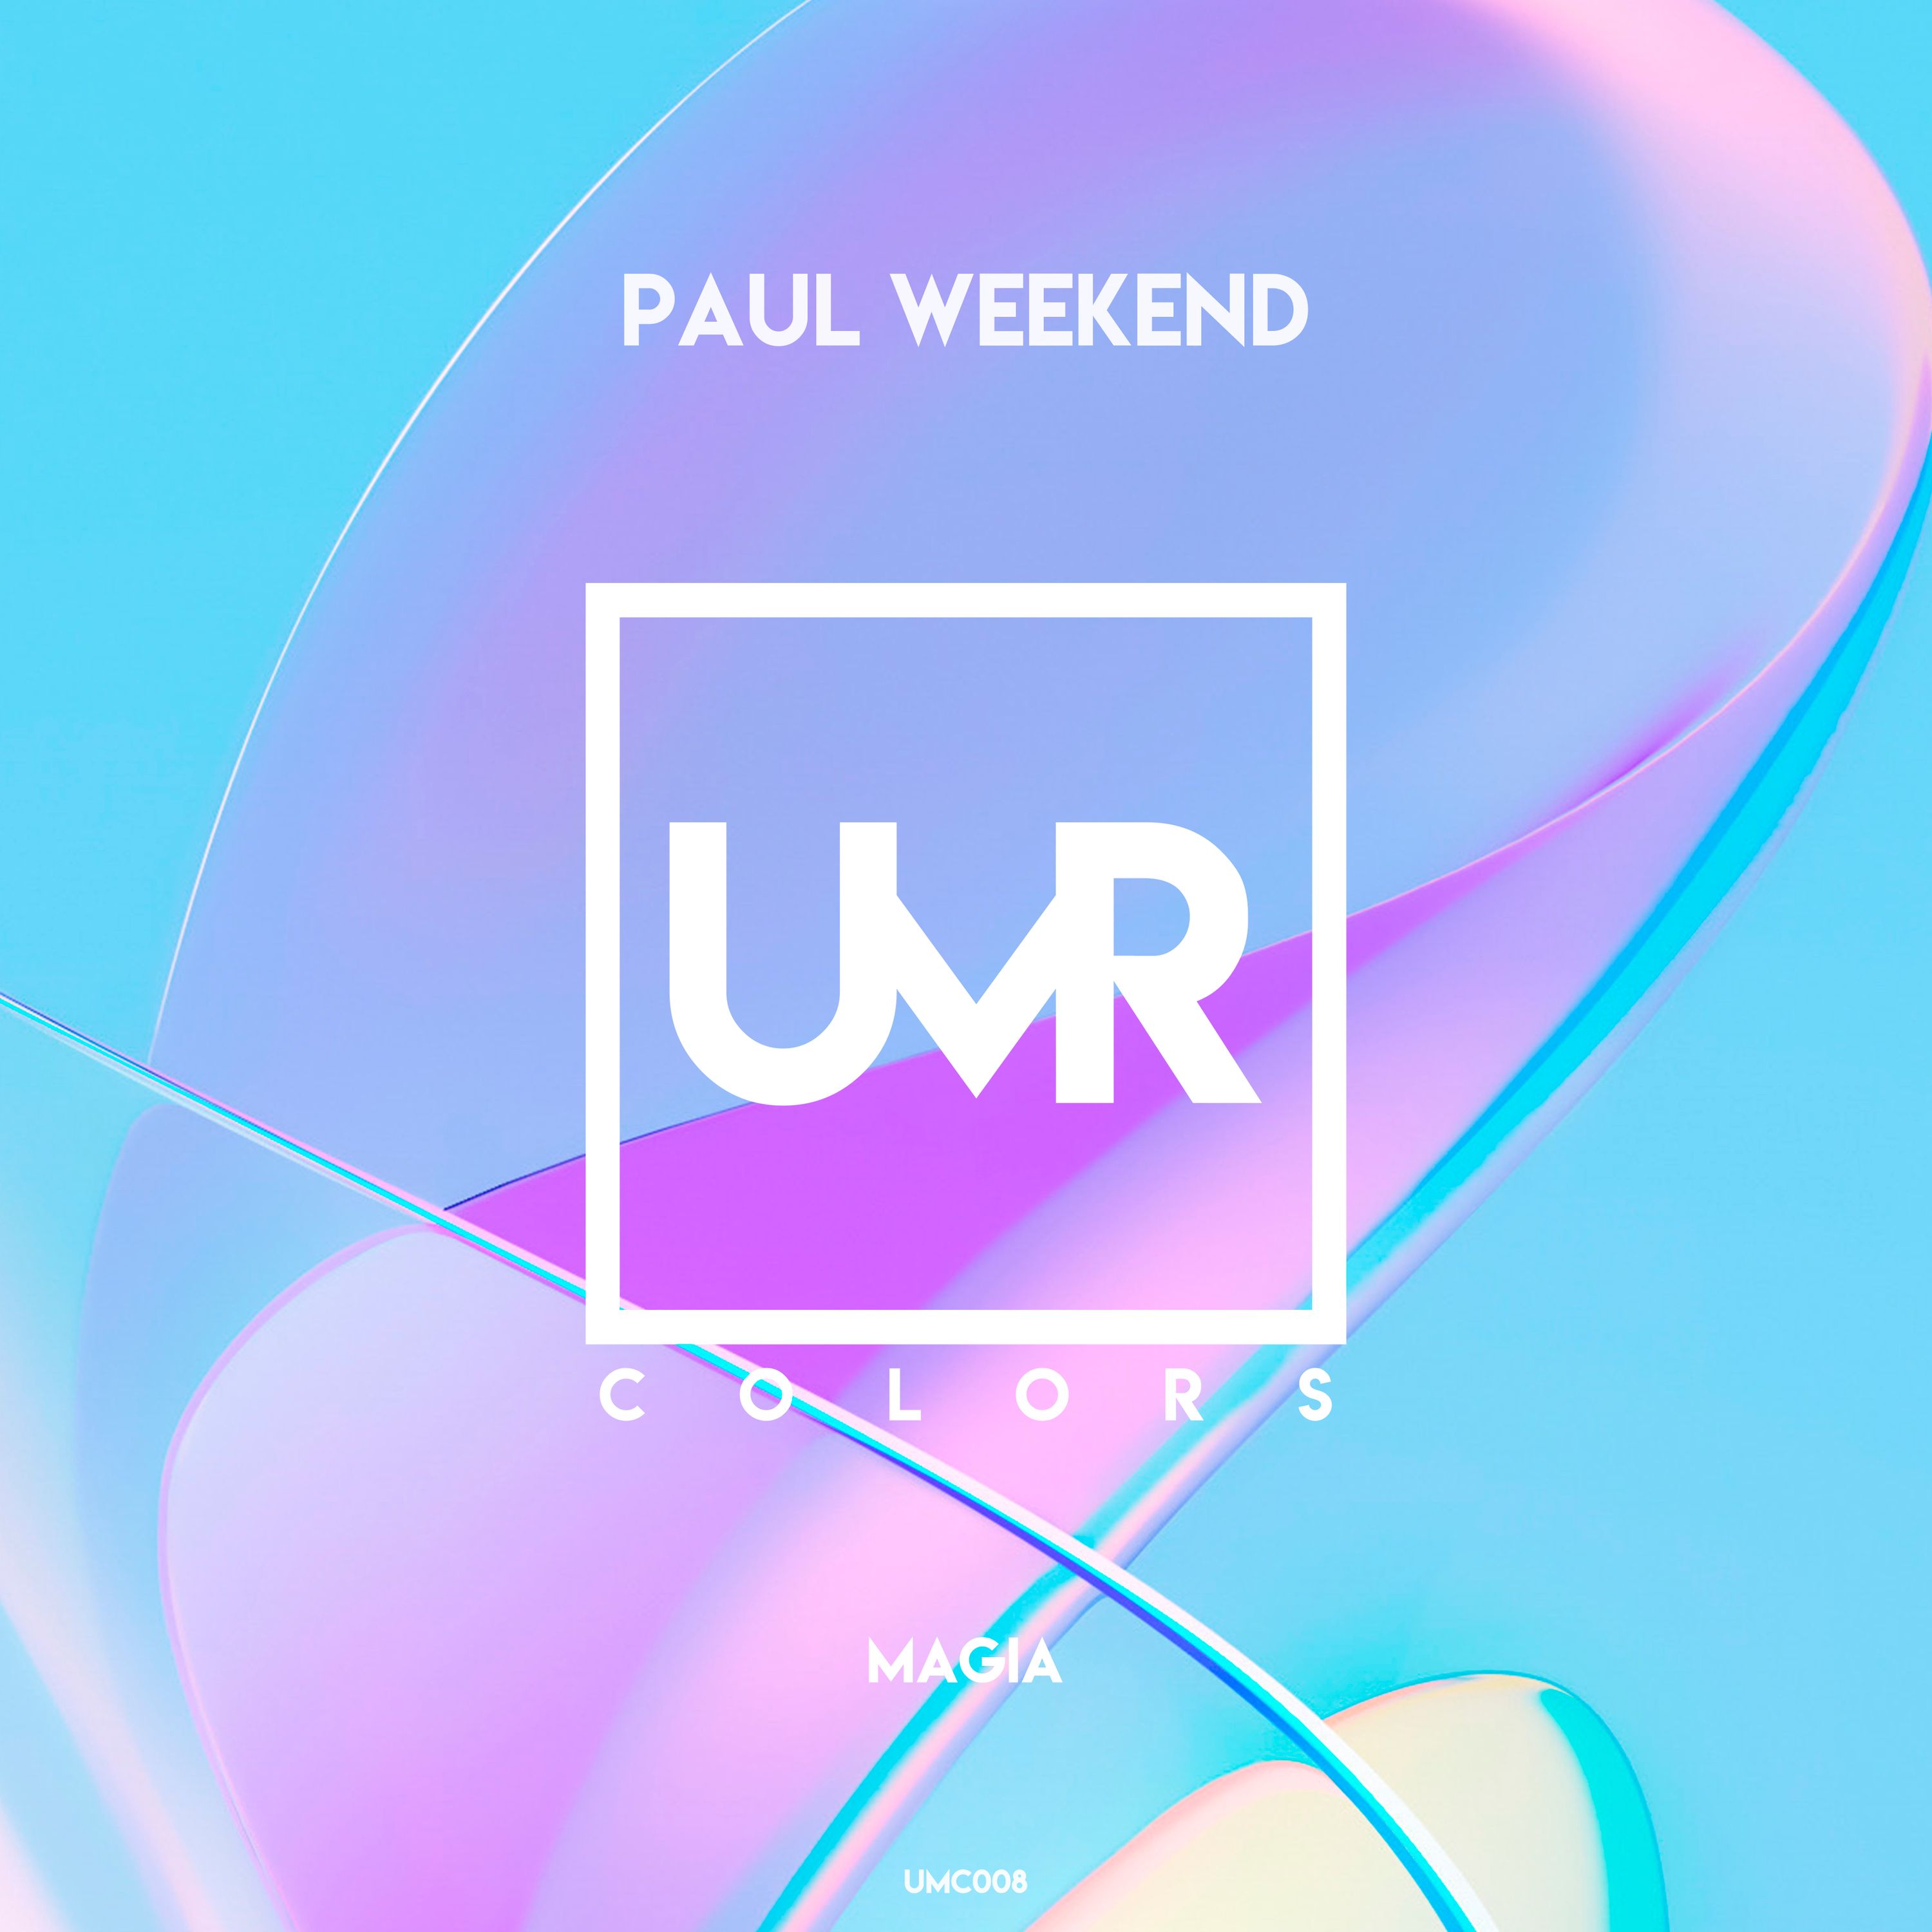 Paul weekend